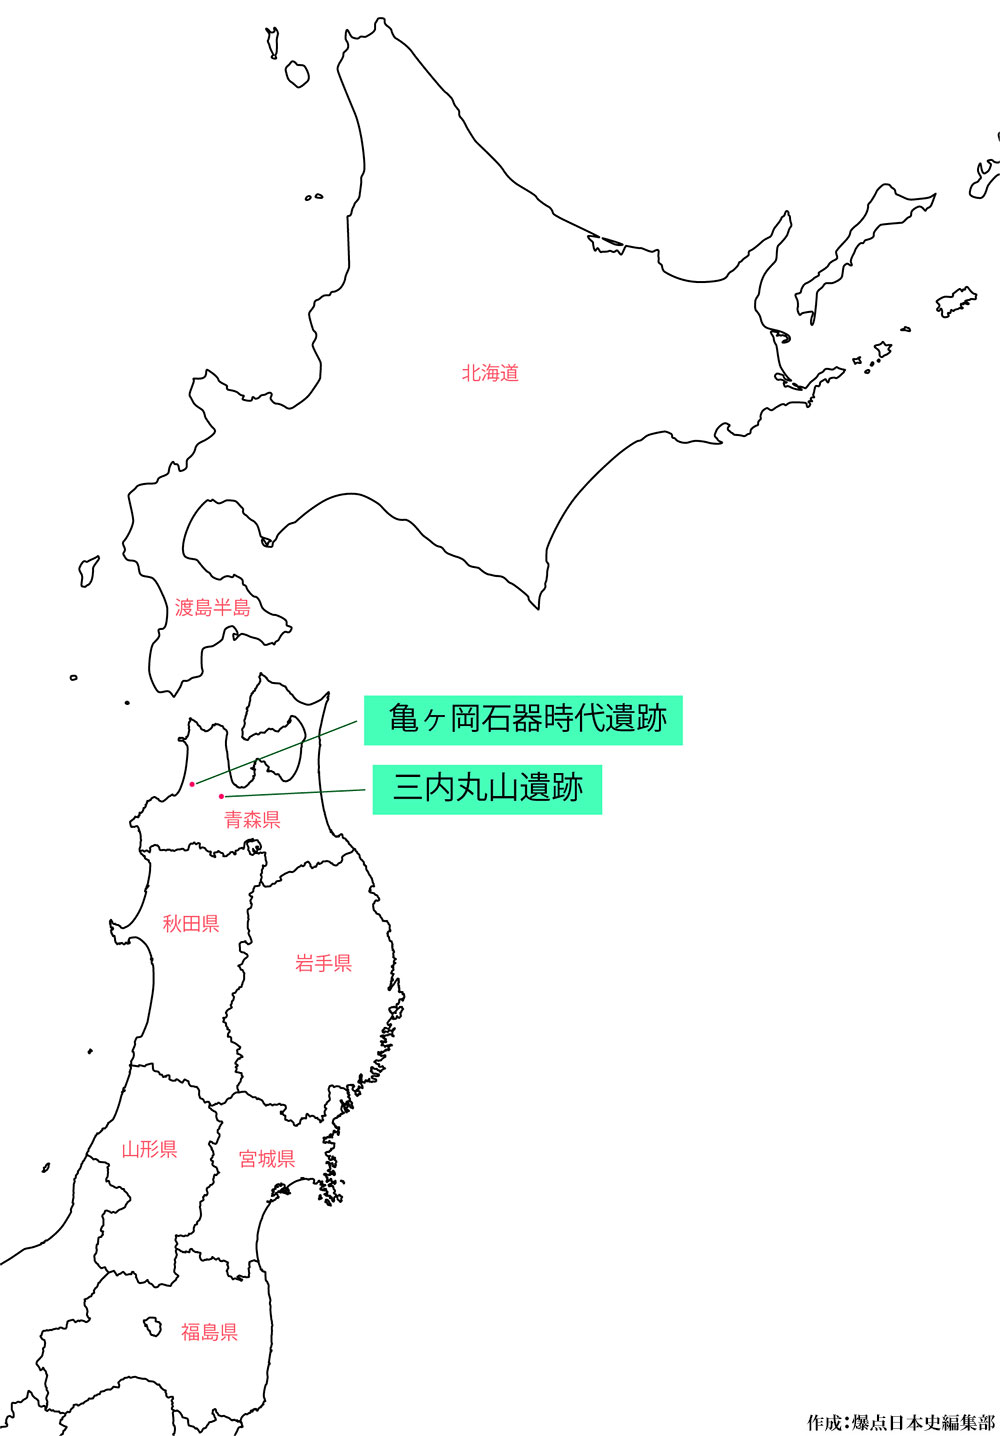 亀ヶ岡石器時代遺跡 亀ヶ岡文化の地図　作成:爆点日本史編集部